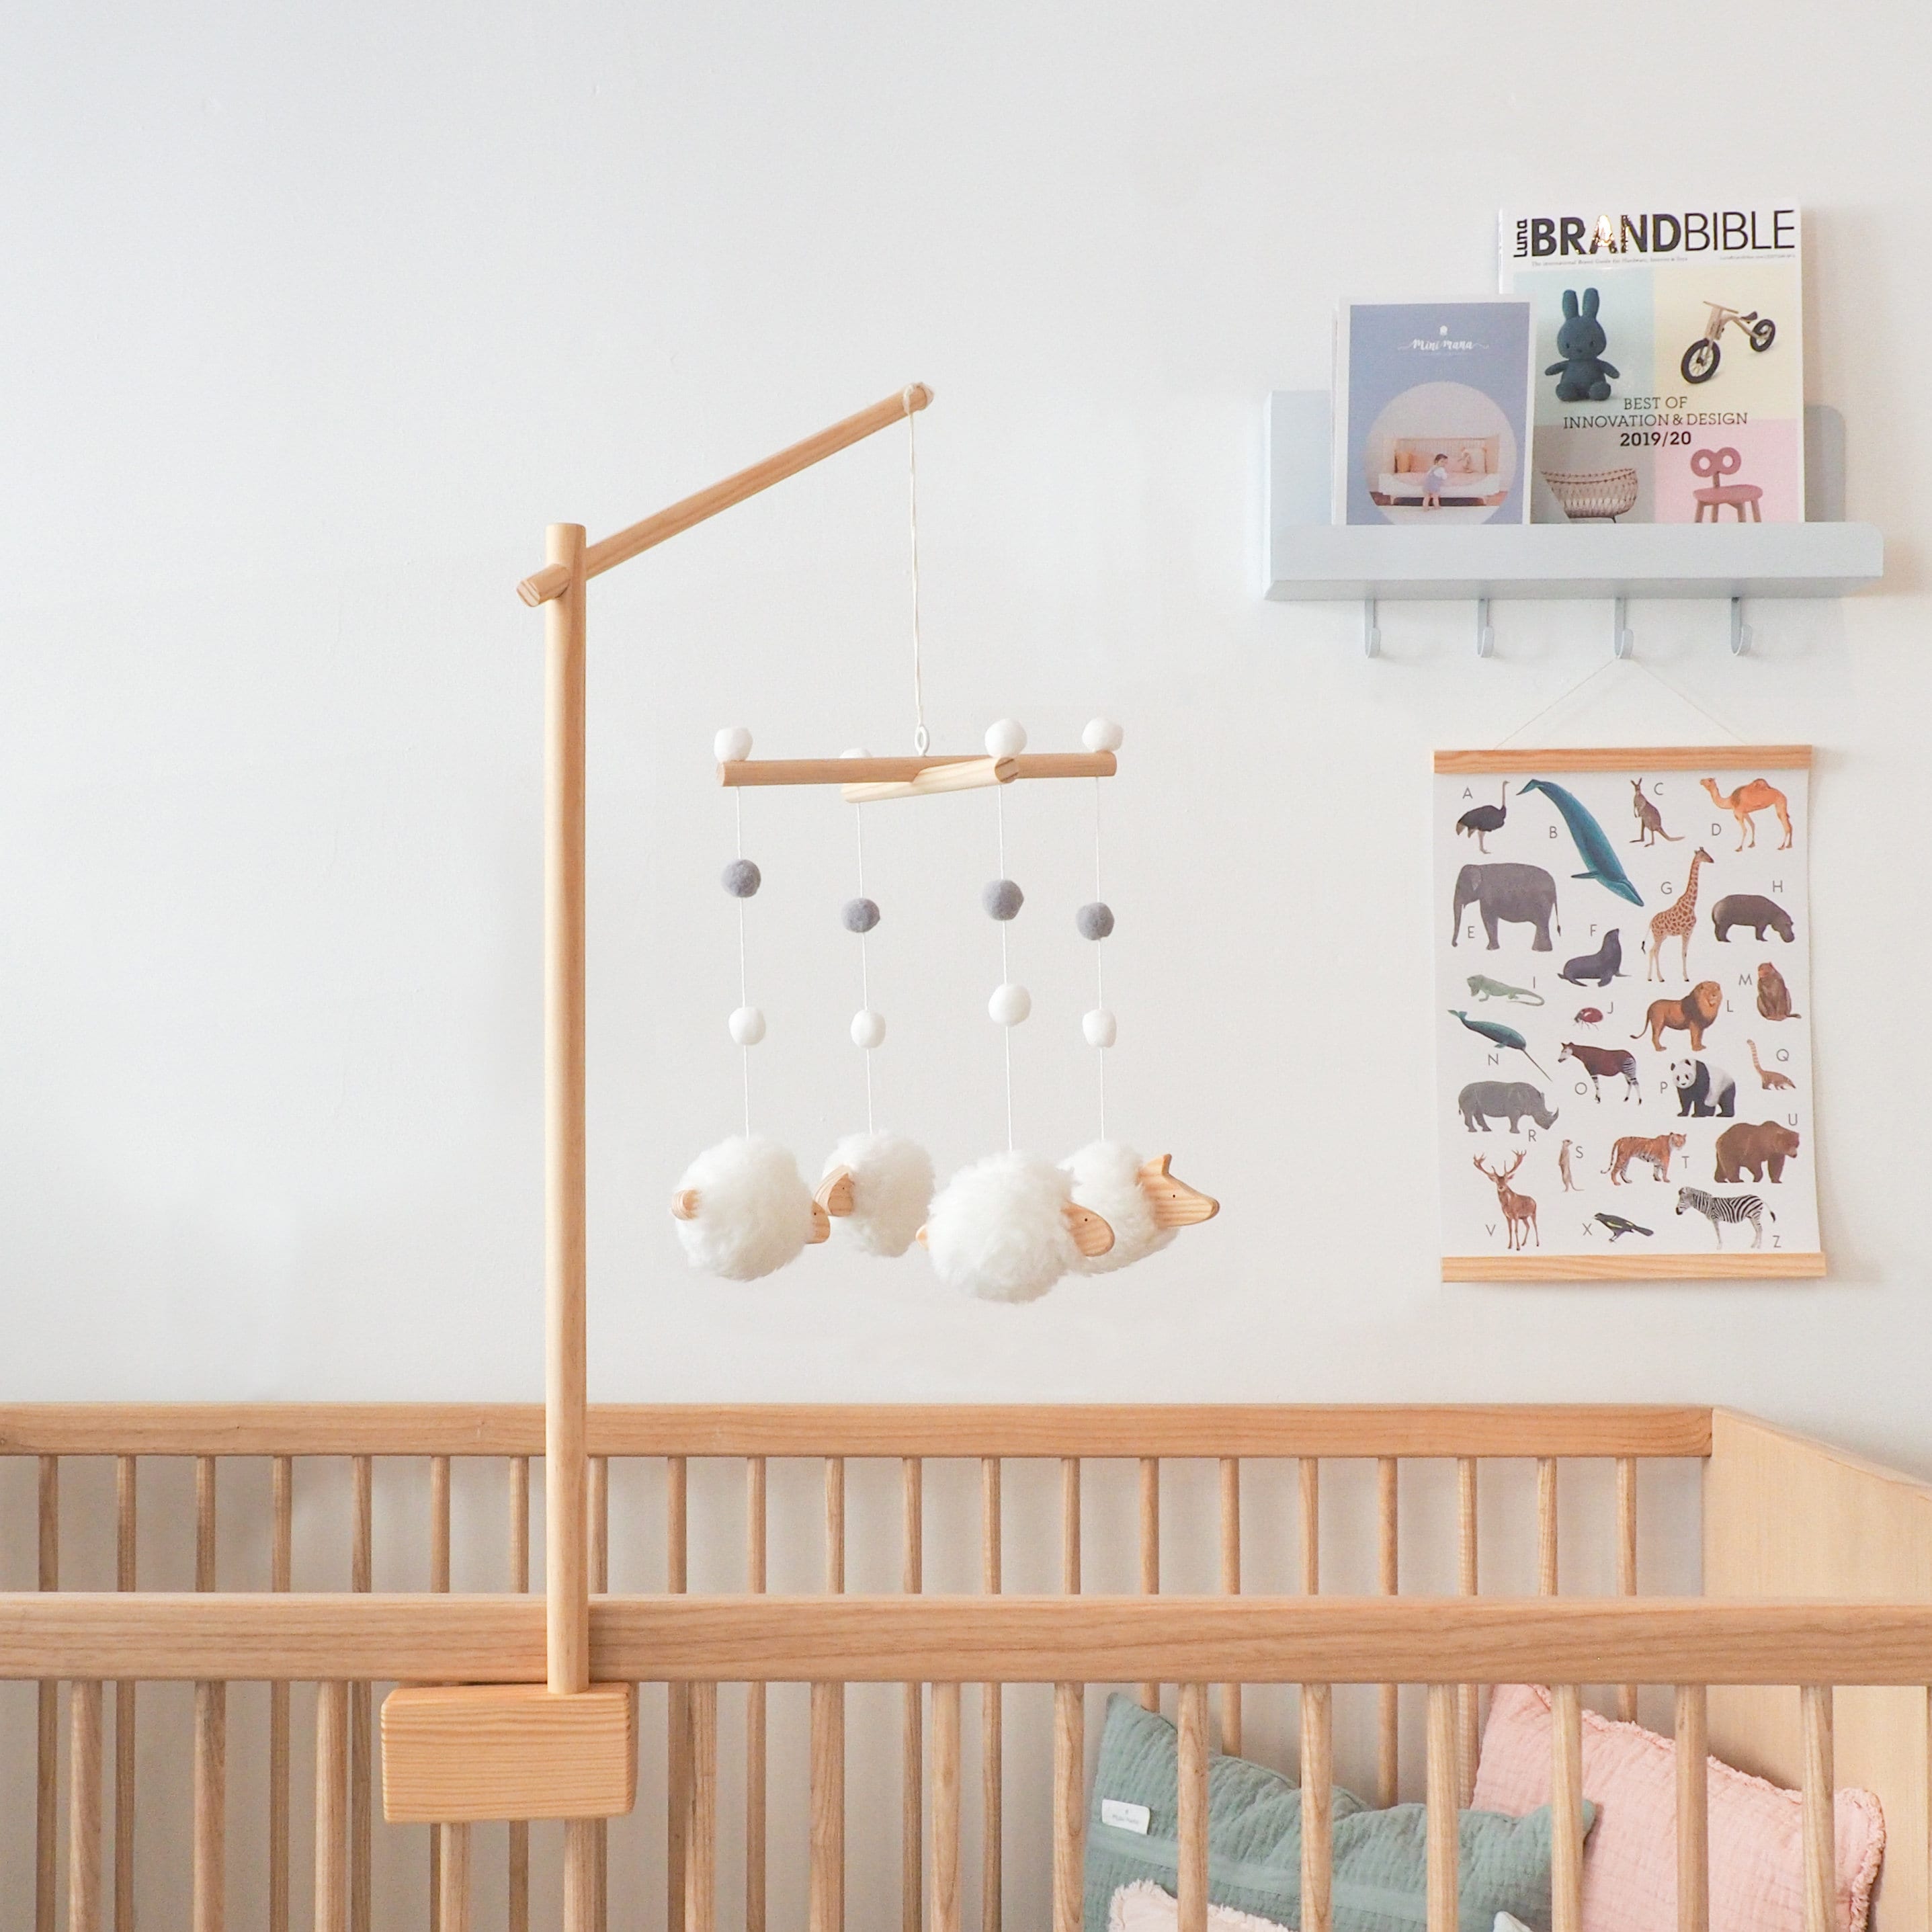 Afleiden stortbui Giftig Wood Baby Mobile Holder Crib Mobile Hanger Crib Wooden - Etsy